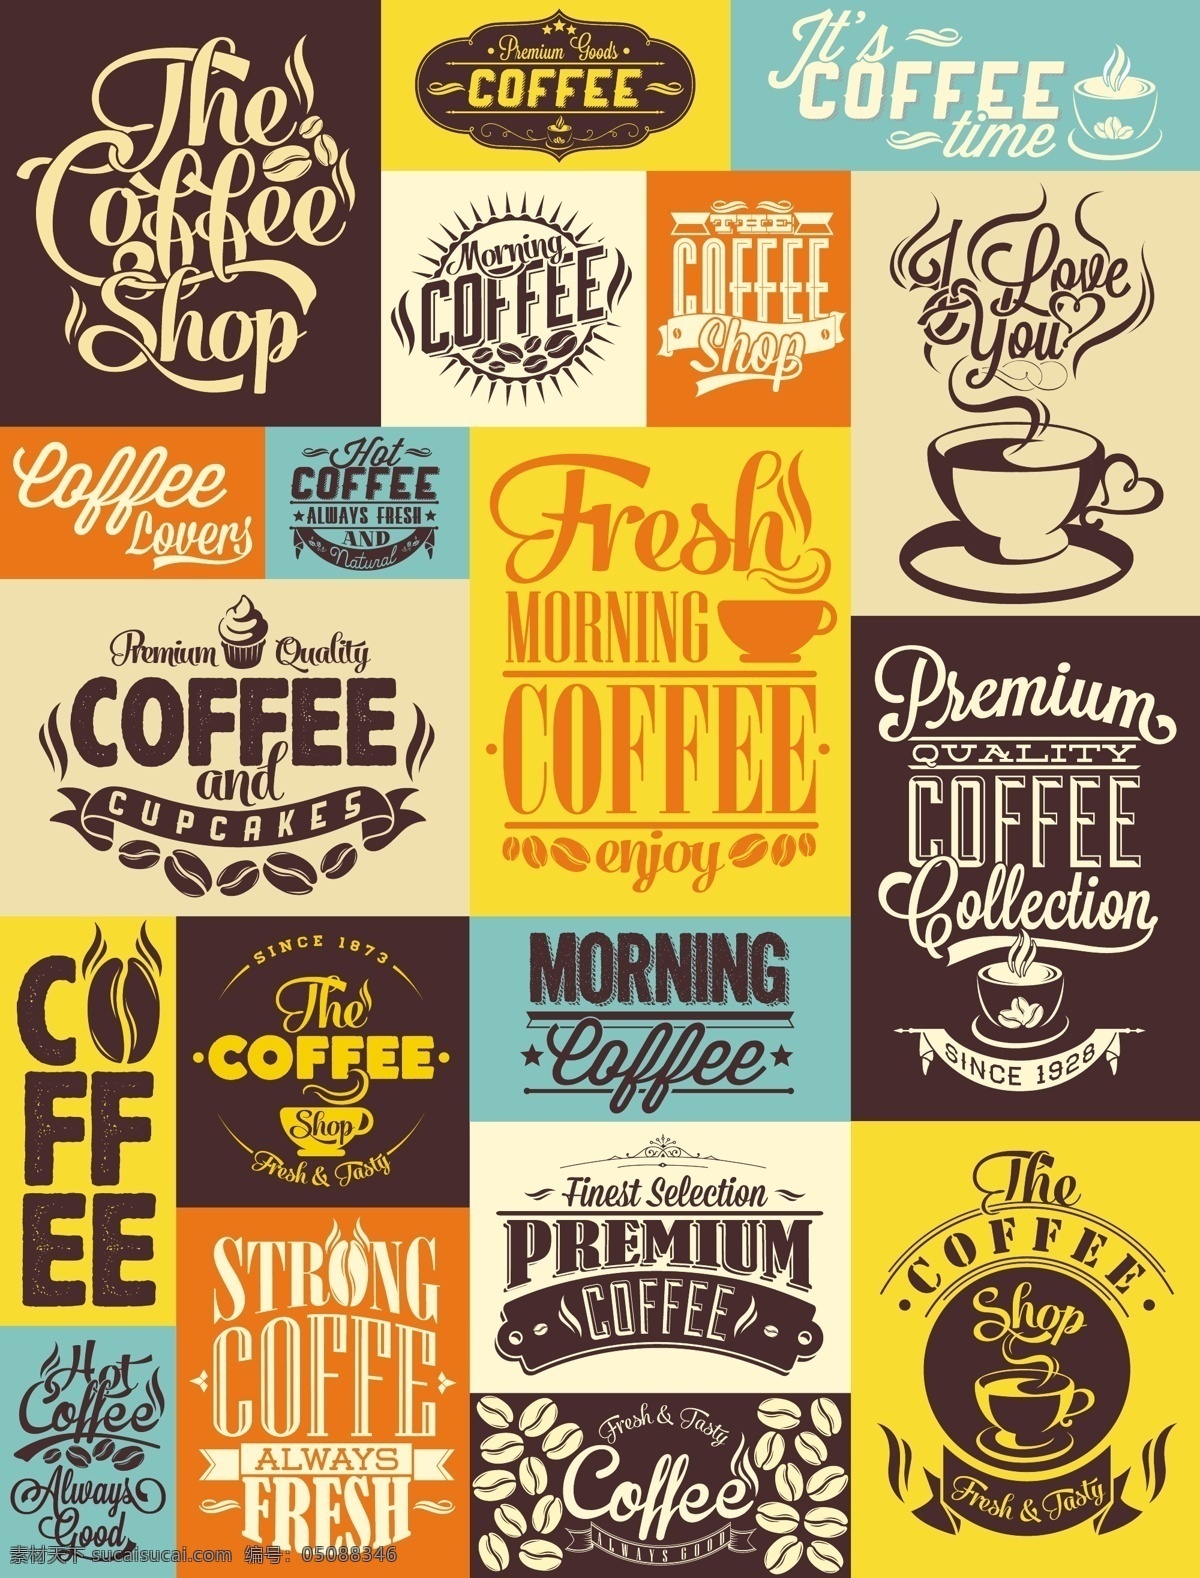 咖啡设计 咖啡 咖啡图标 咖啡标志 咖啡店 咖啡元素 咖啡店图标 logo coffee 咖啡商标 图标 标志 vi icon 小图标 图标设计 logo设计 标志设计 标识设计 矢量设计 餐饮美食 生活百科 矢量